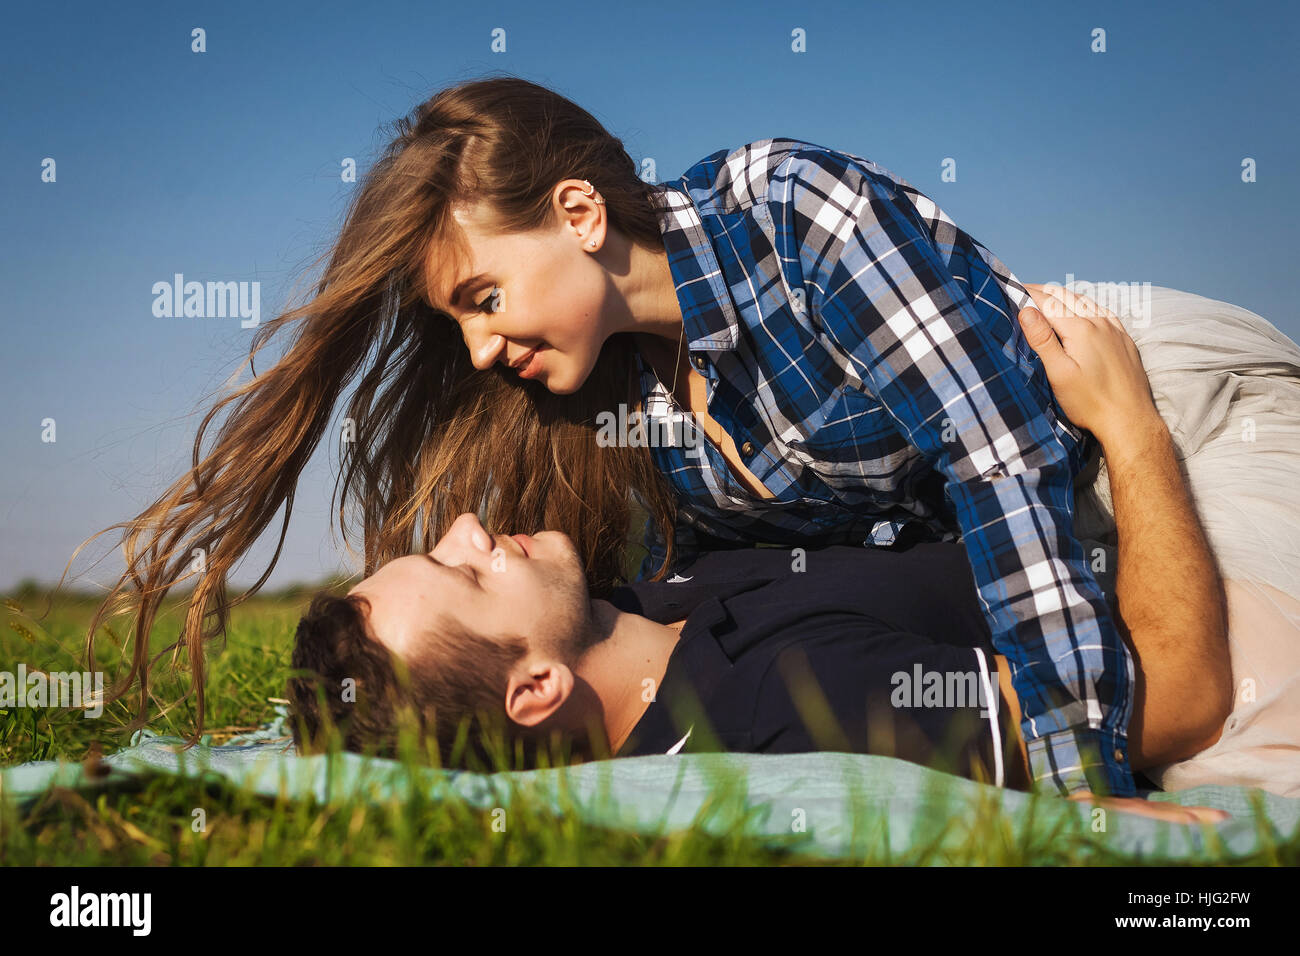 Jugendliche liegen im grünen Sommer Gras. Mädchen auf der Oberseite der Kerl Stockfoto